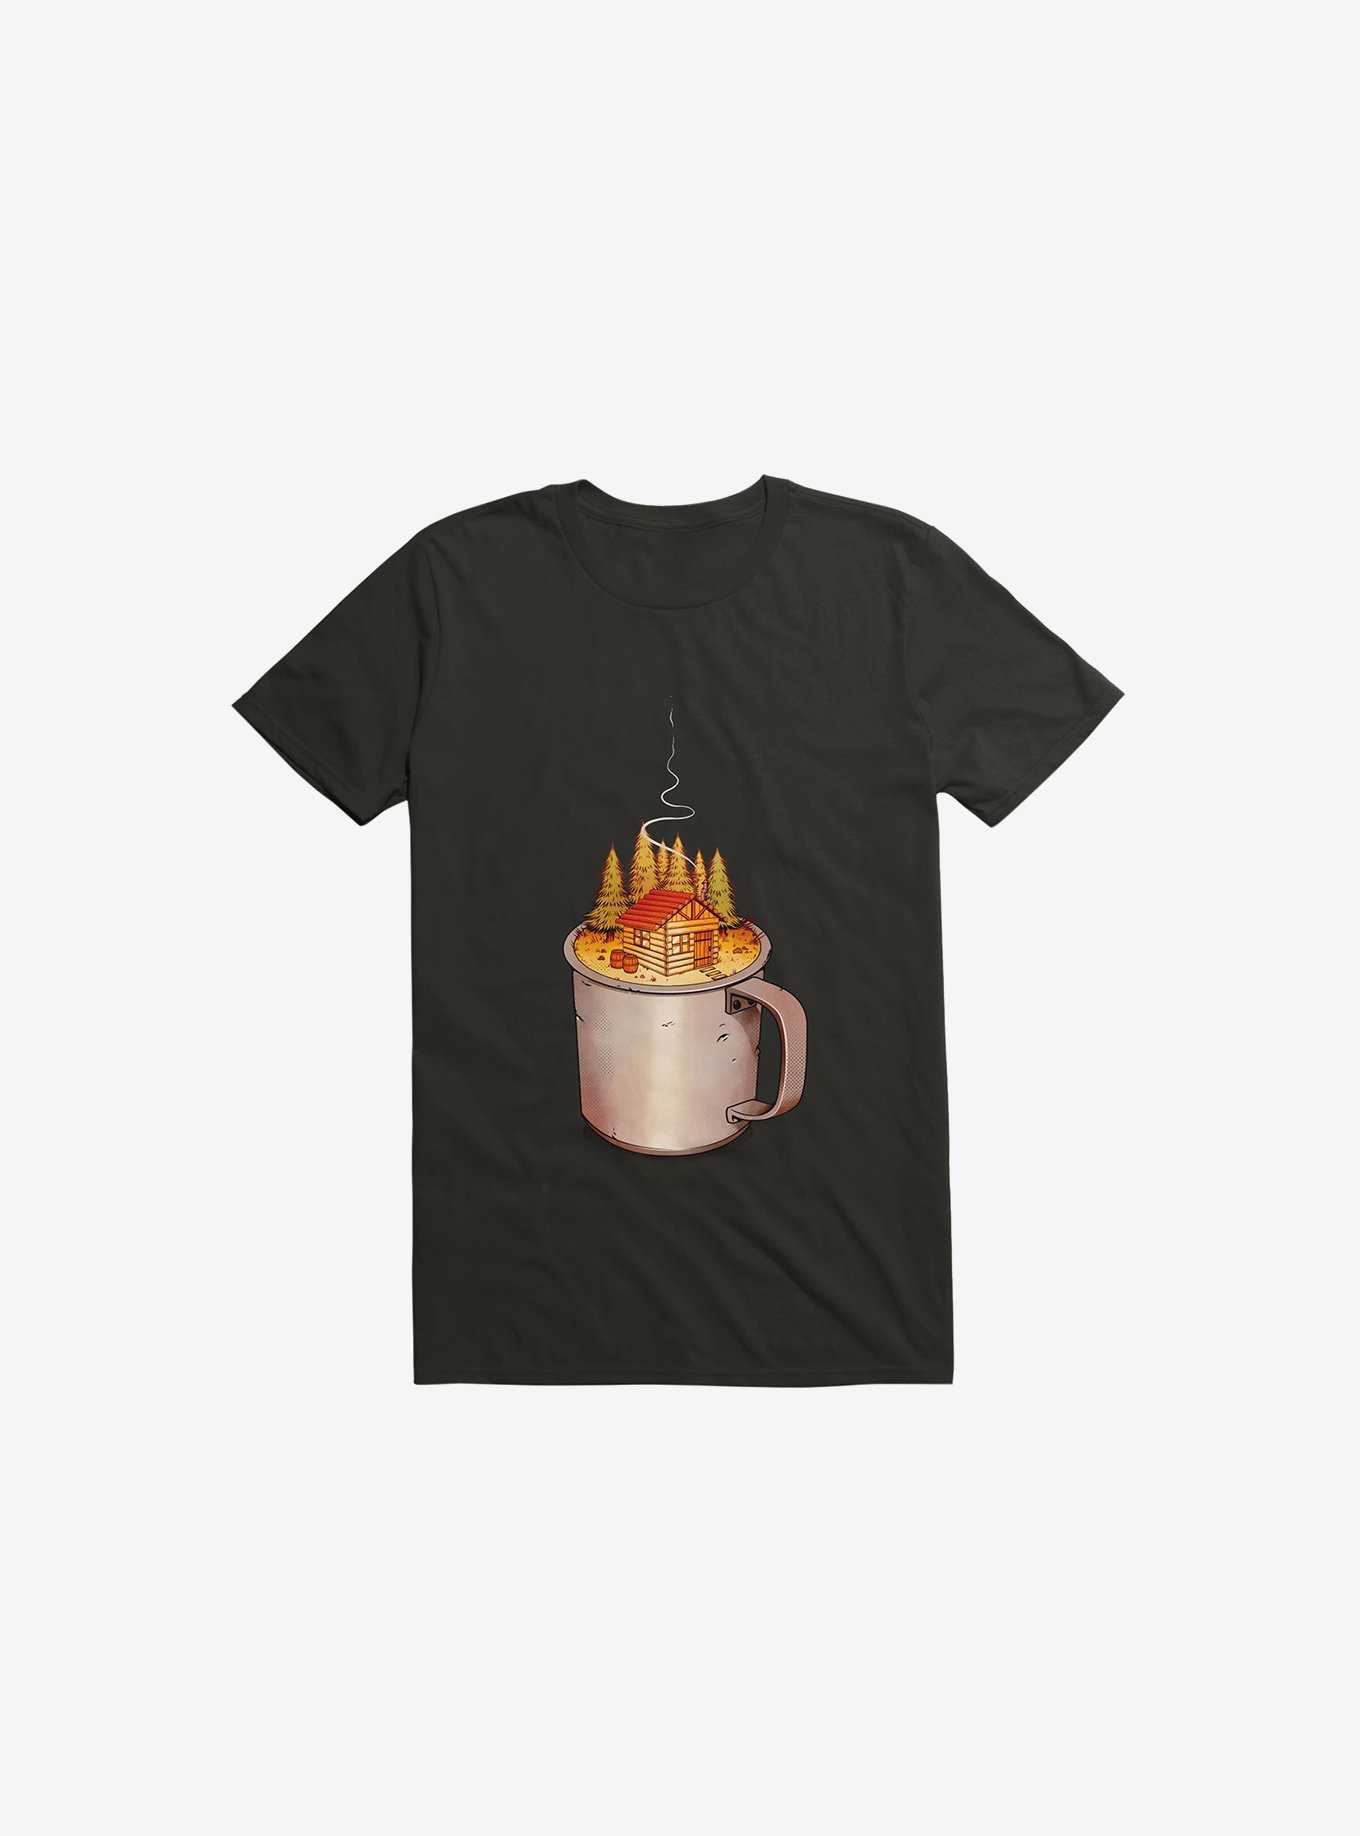 My Camp Of Tea Black T-Shirt, , hi-res